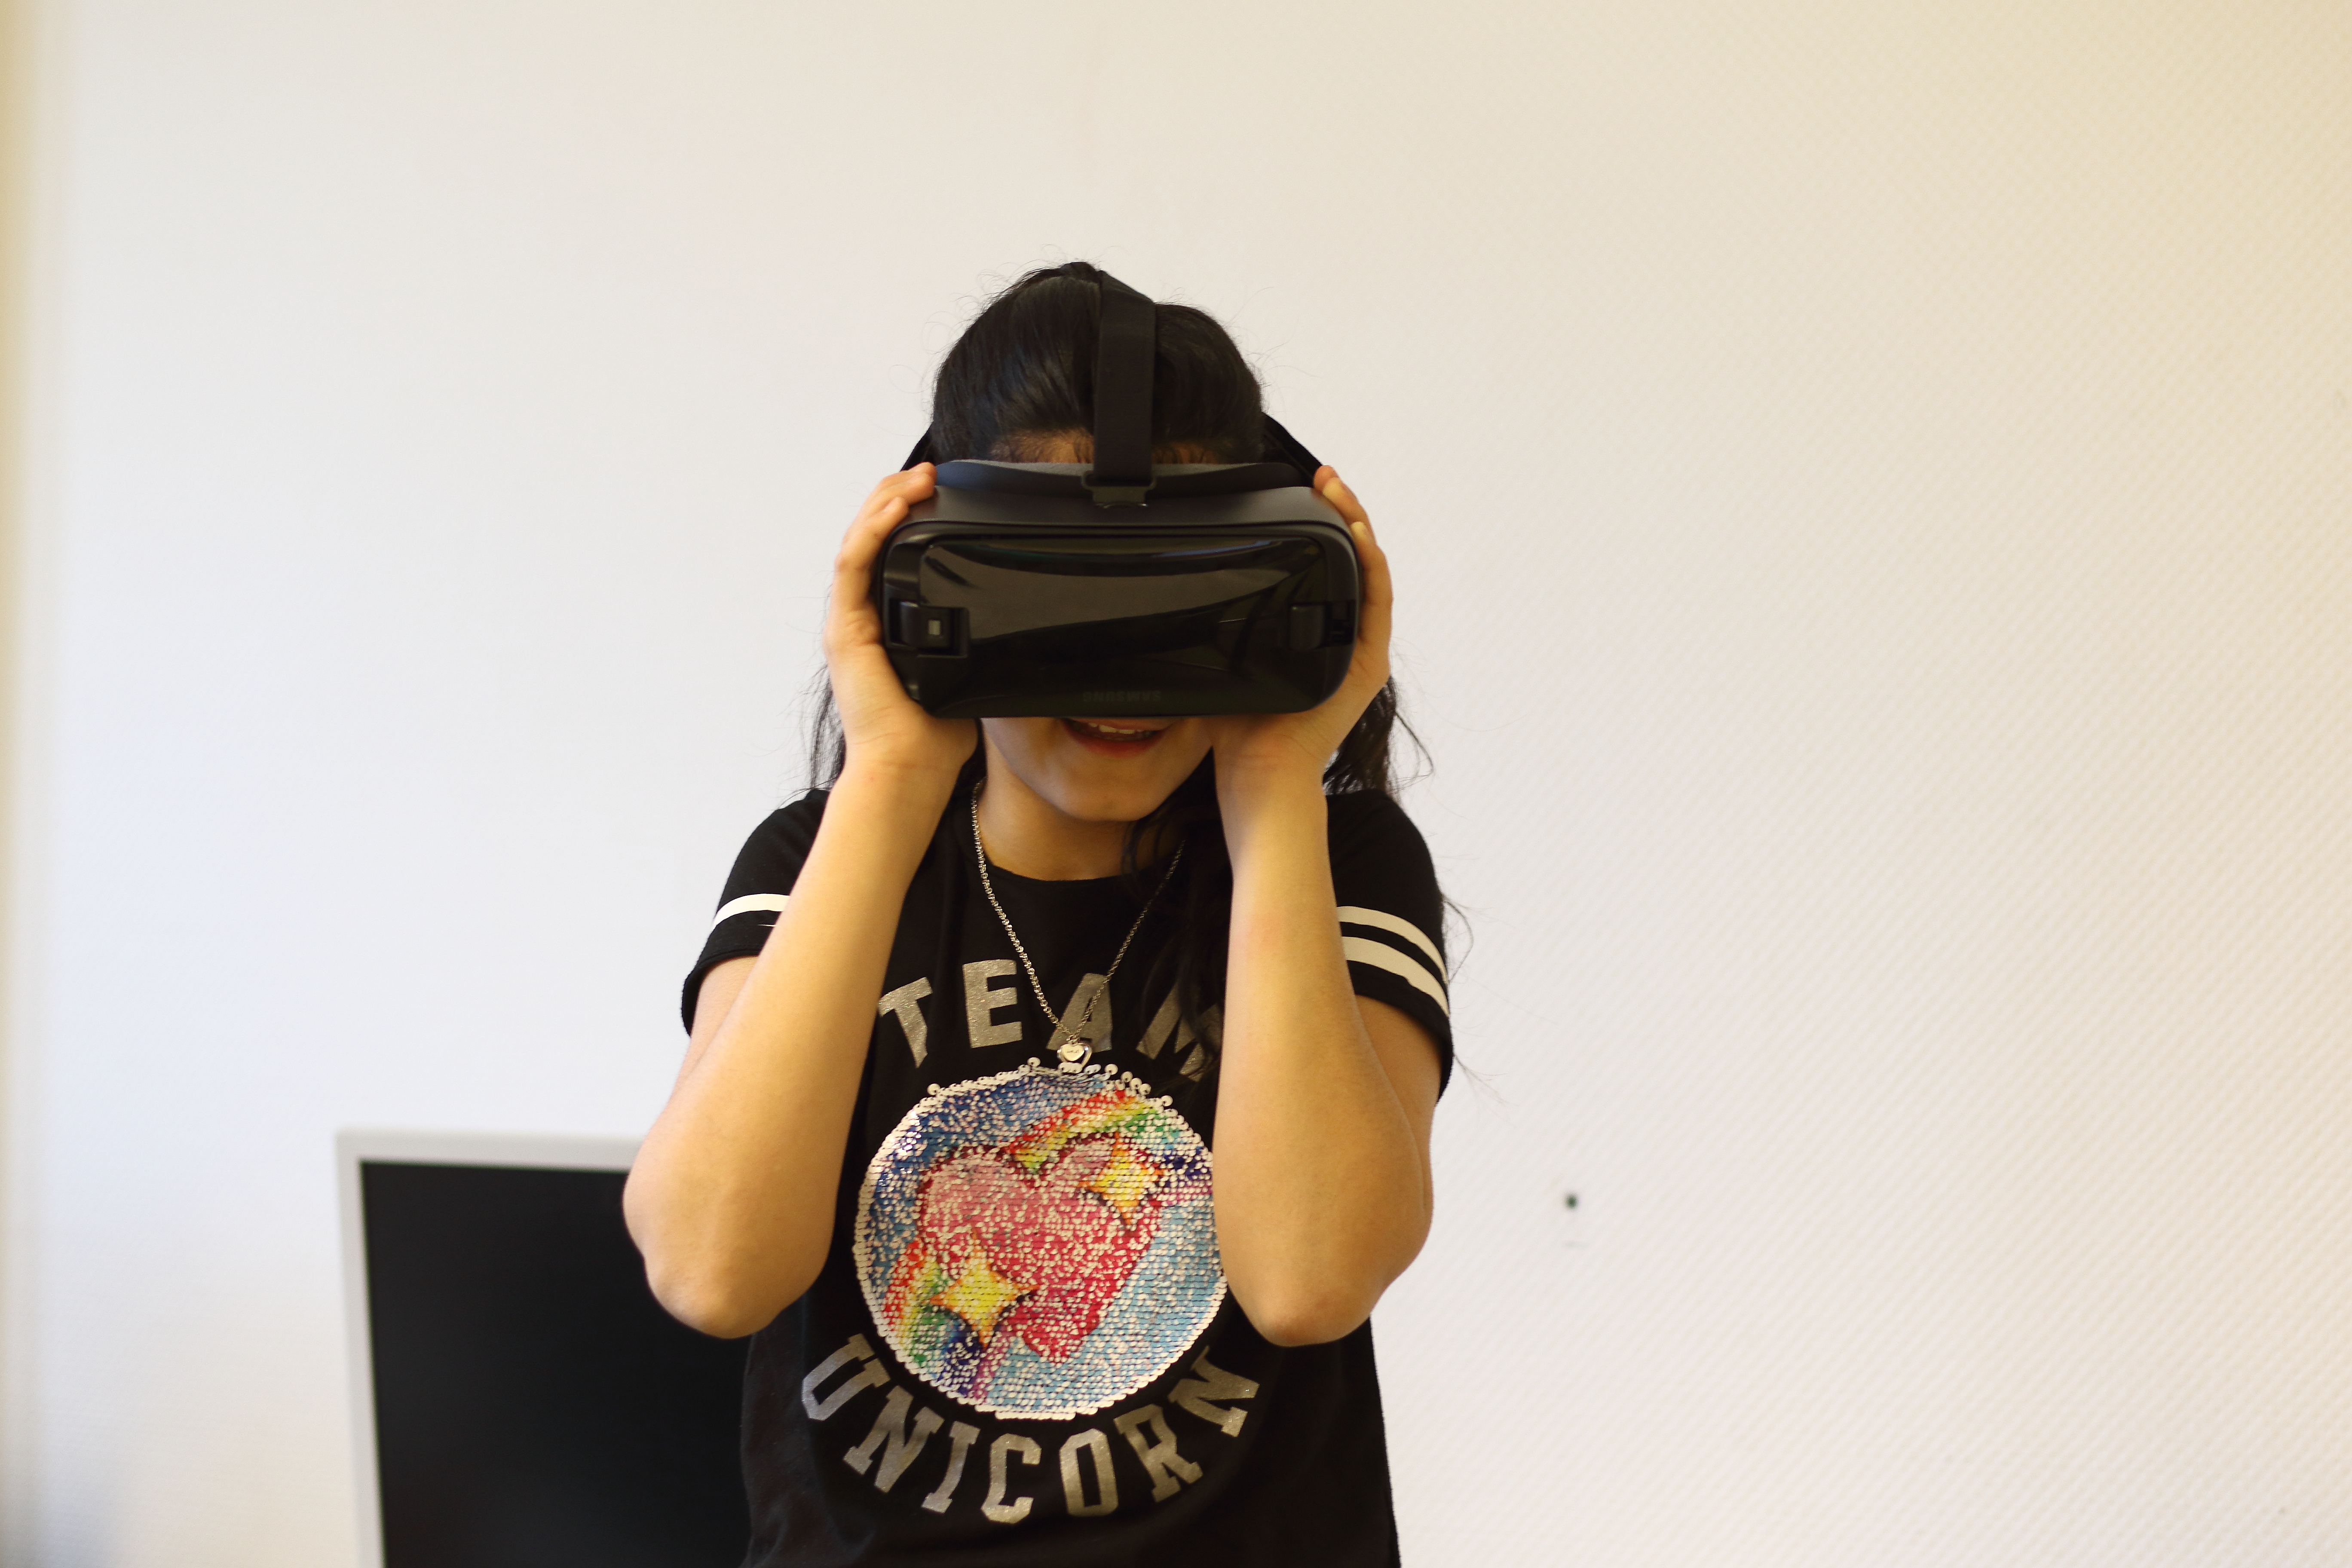 Ein Mädchen trägt eine Virtual-Reality-Brille und sie lacht dabei.